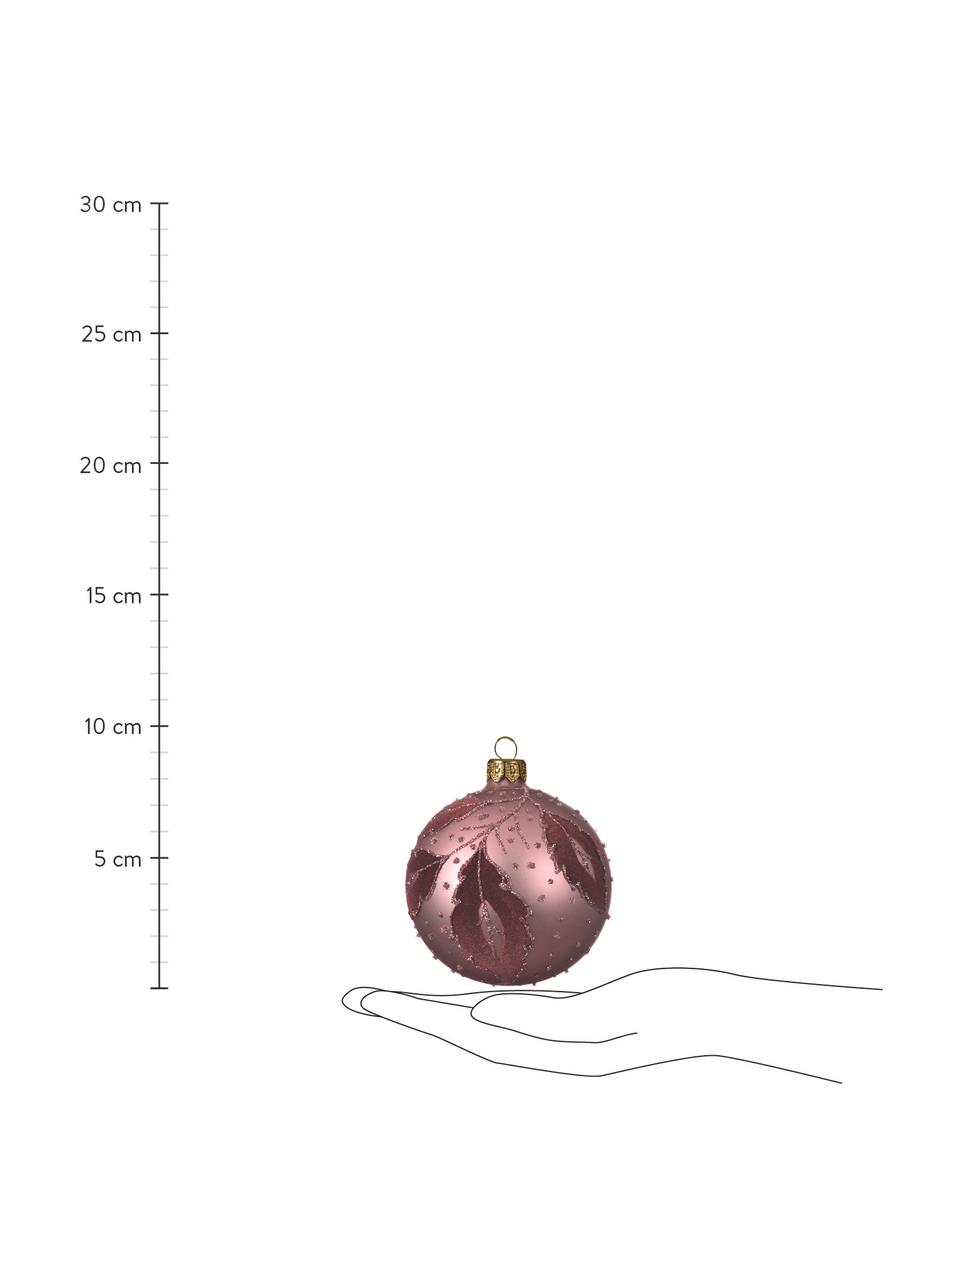 Vánoční ozdoby Violetta, 6 ks, Tmavě fialová, Ø 8 cm